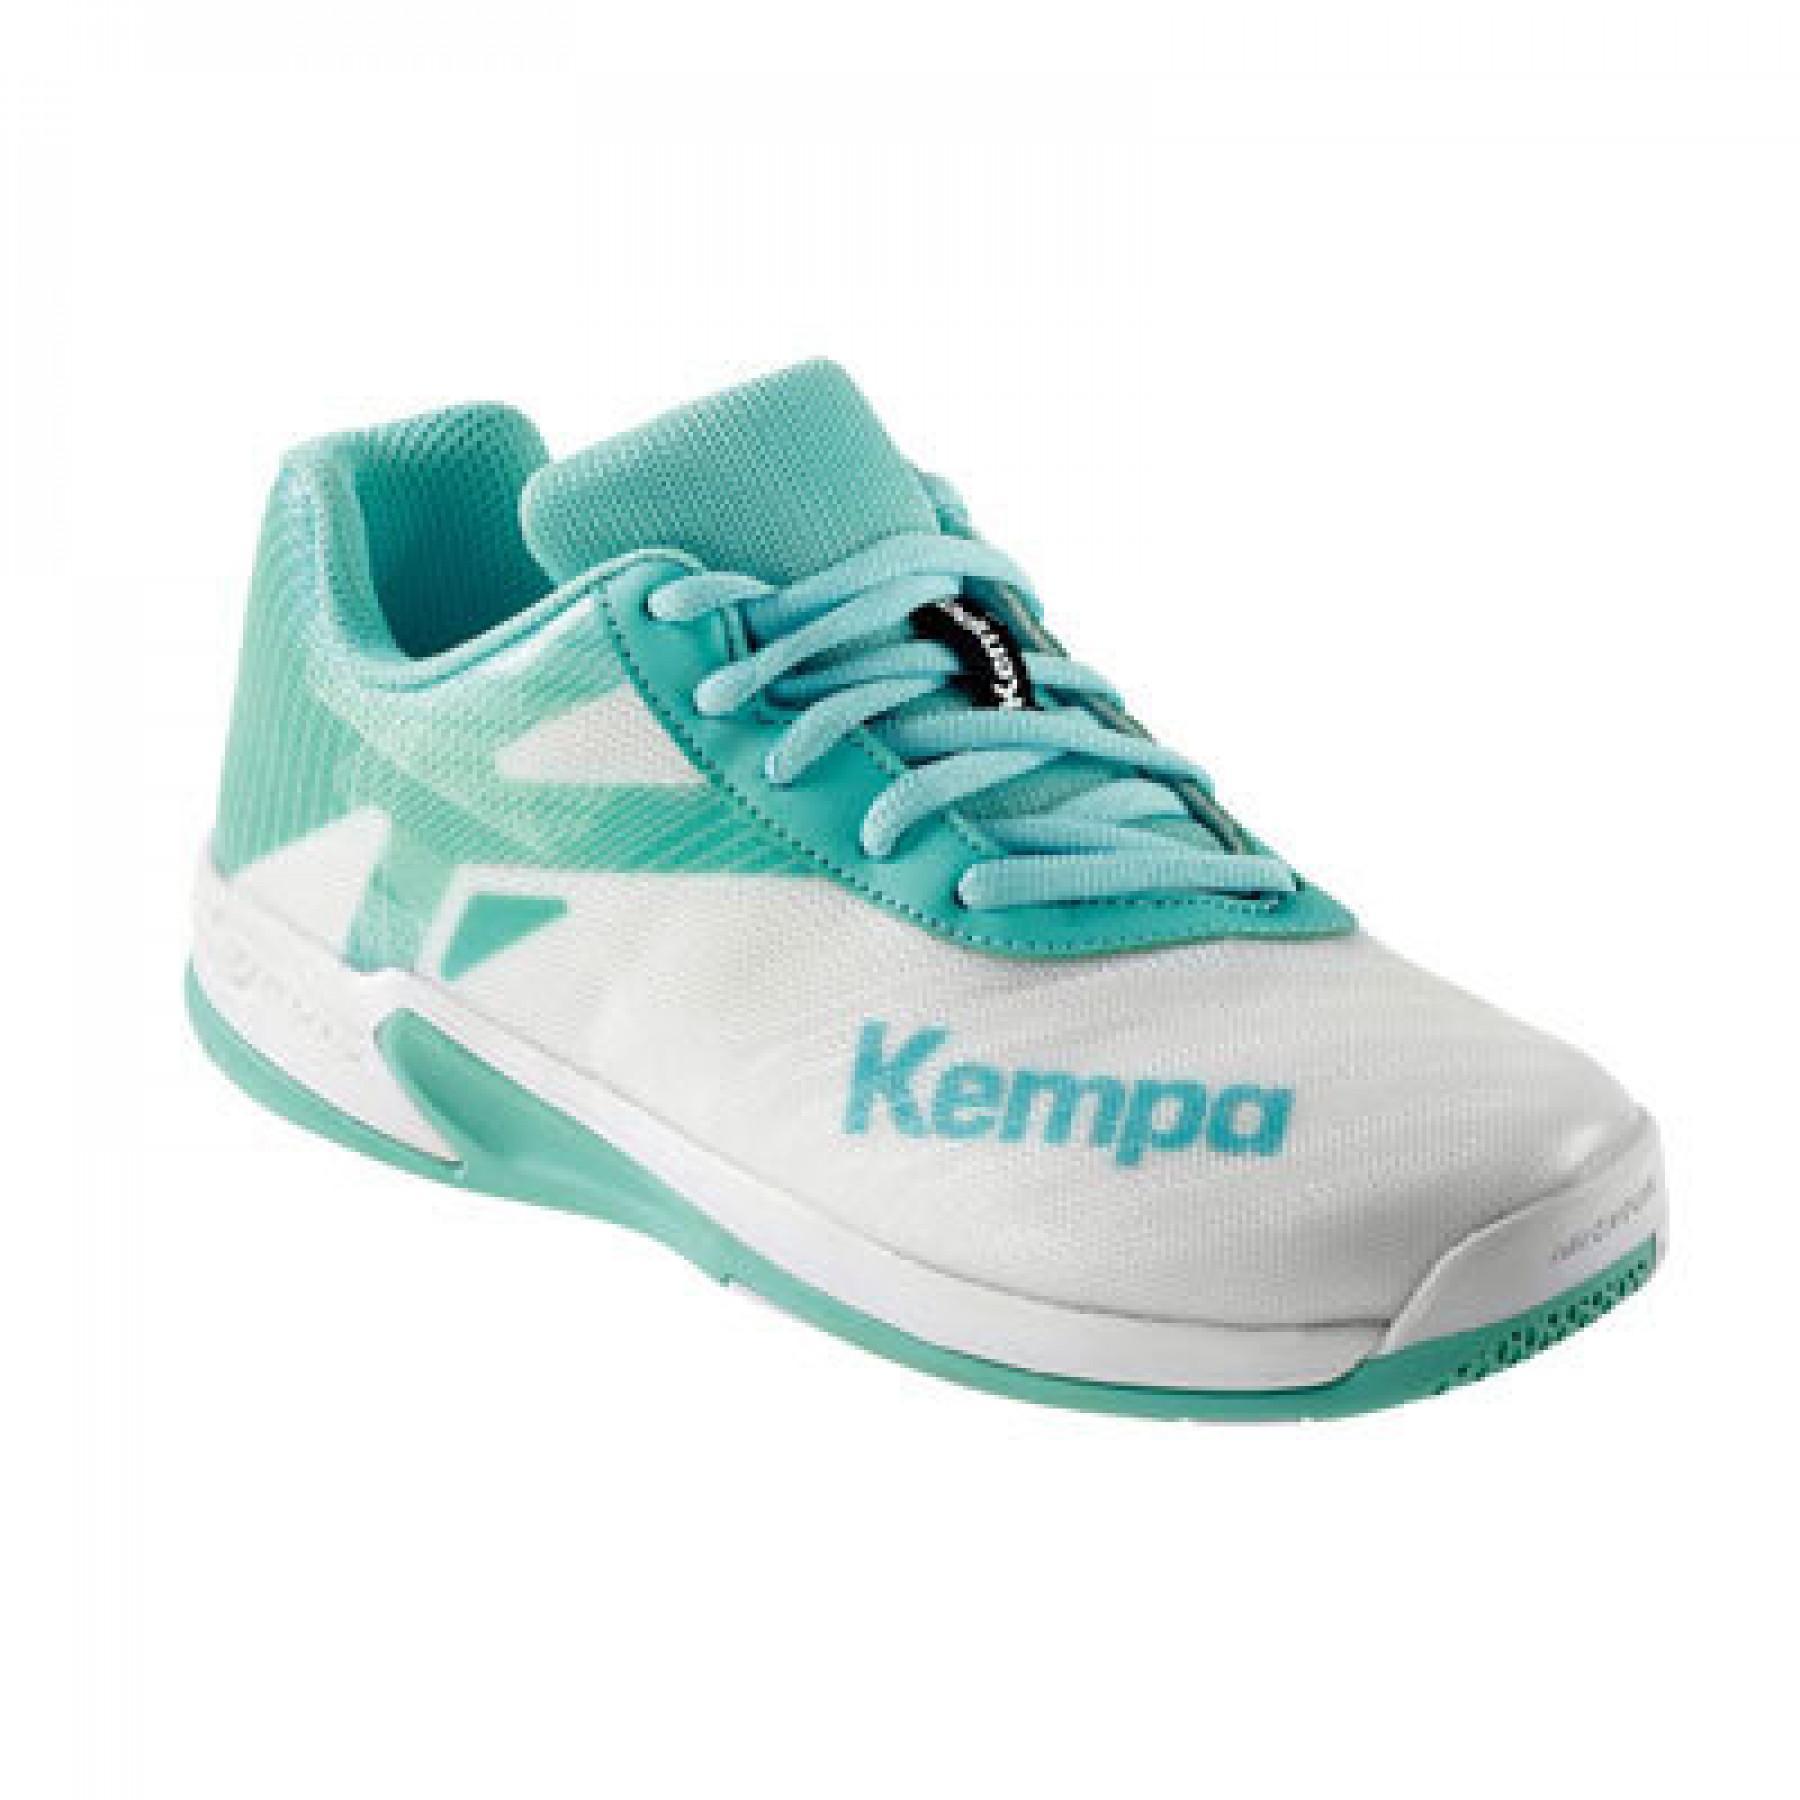 Kinderschoenen Kempa Wing 2.0